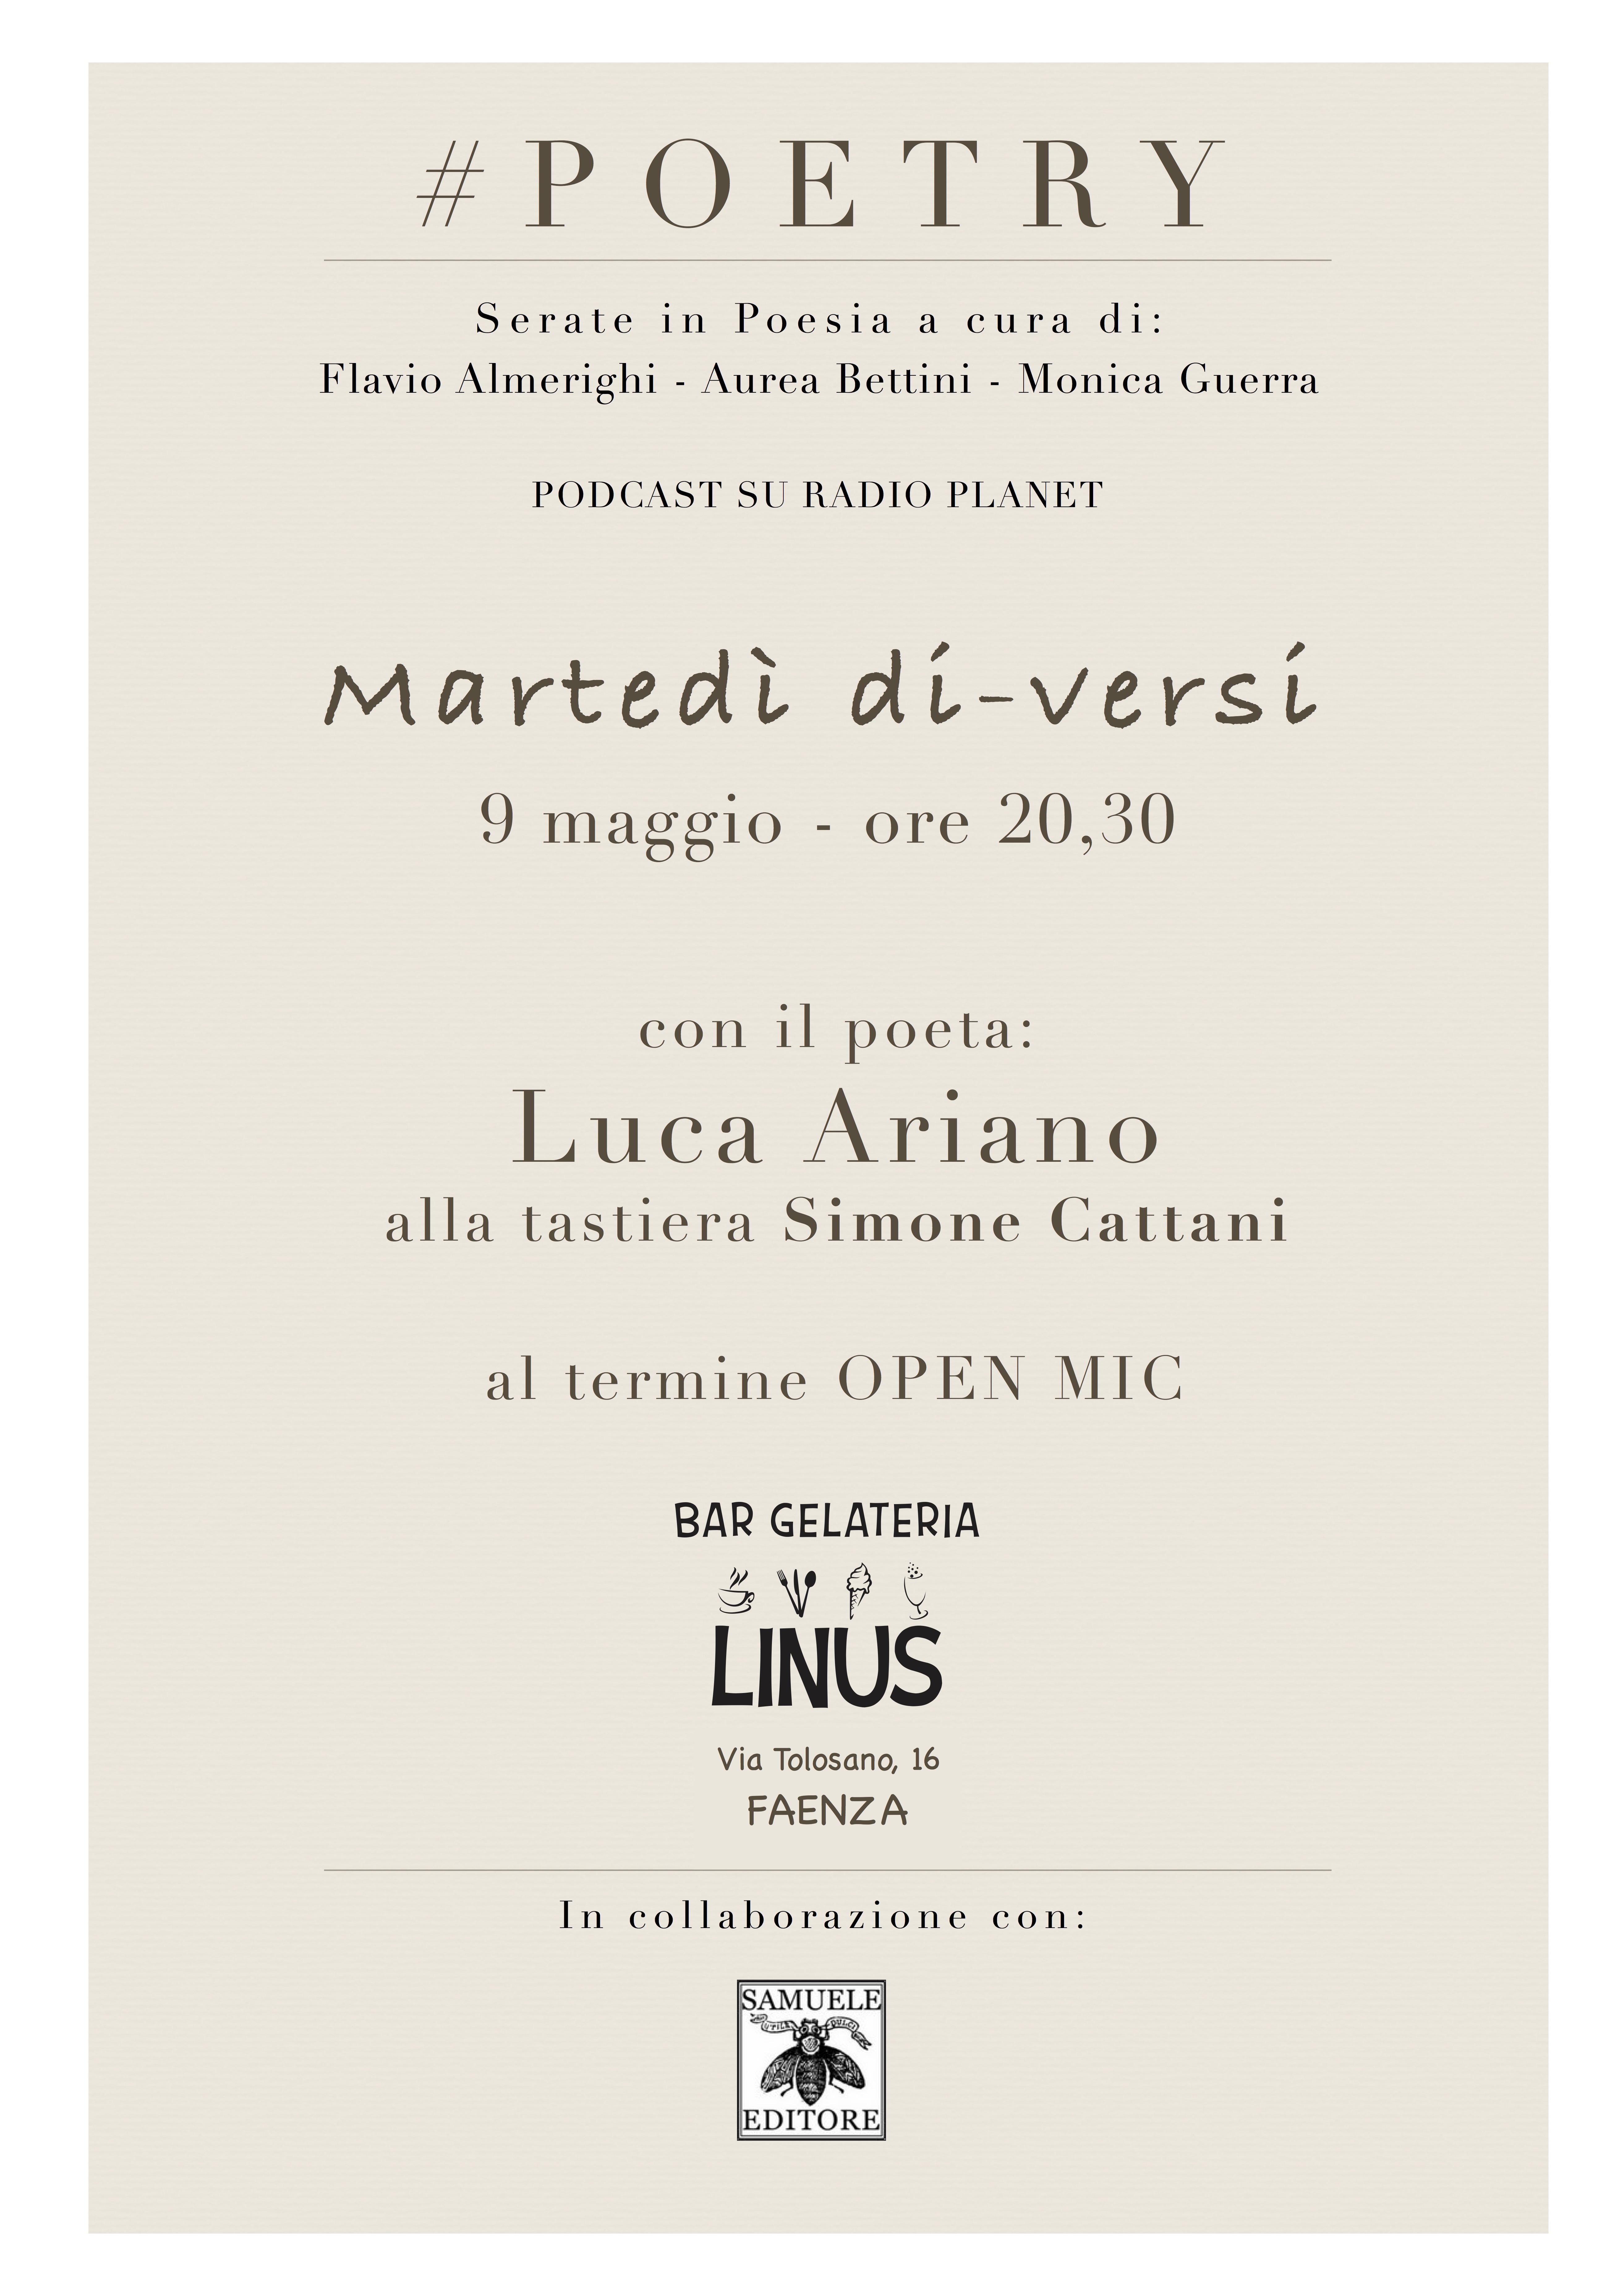 Copia di 9 maggio Luca Ariano #POETRY Linus